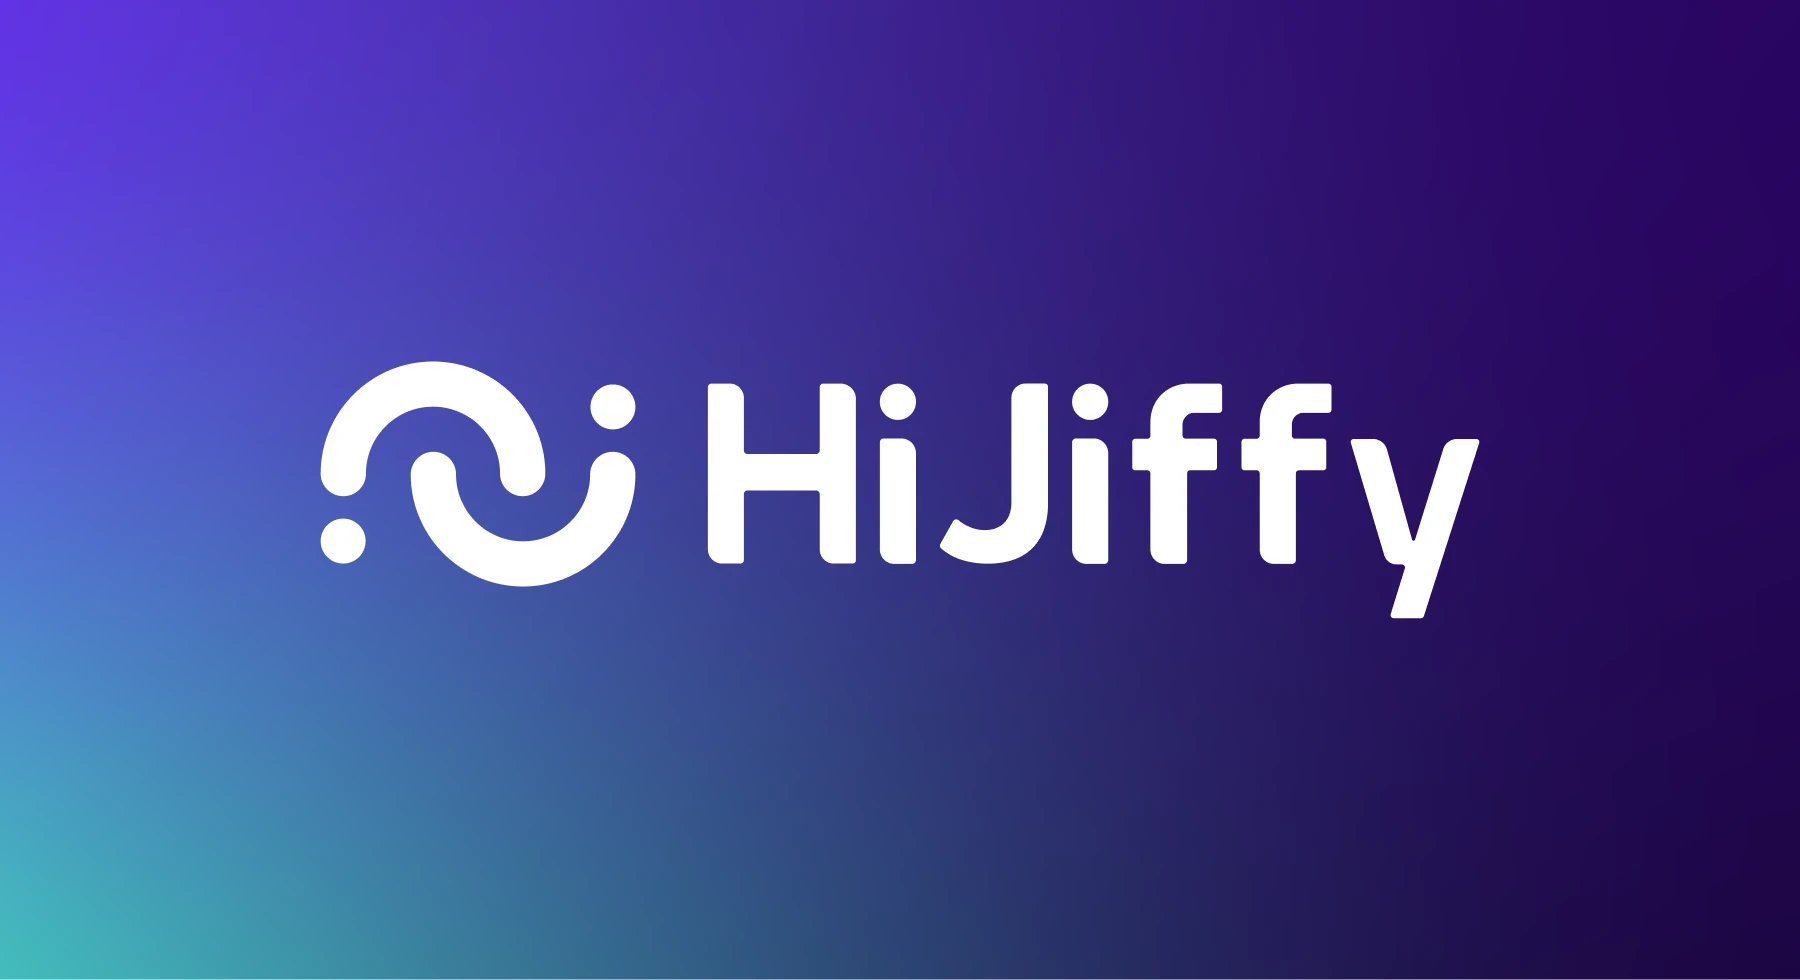 HiJiffy unveils new brand identity